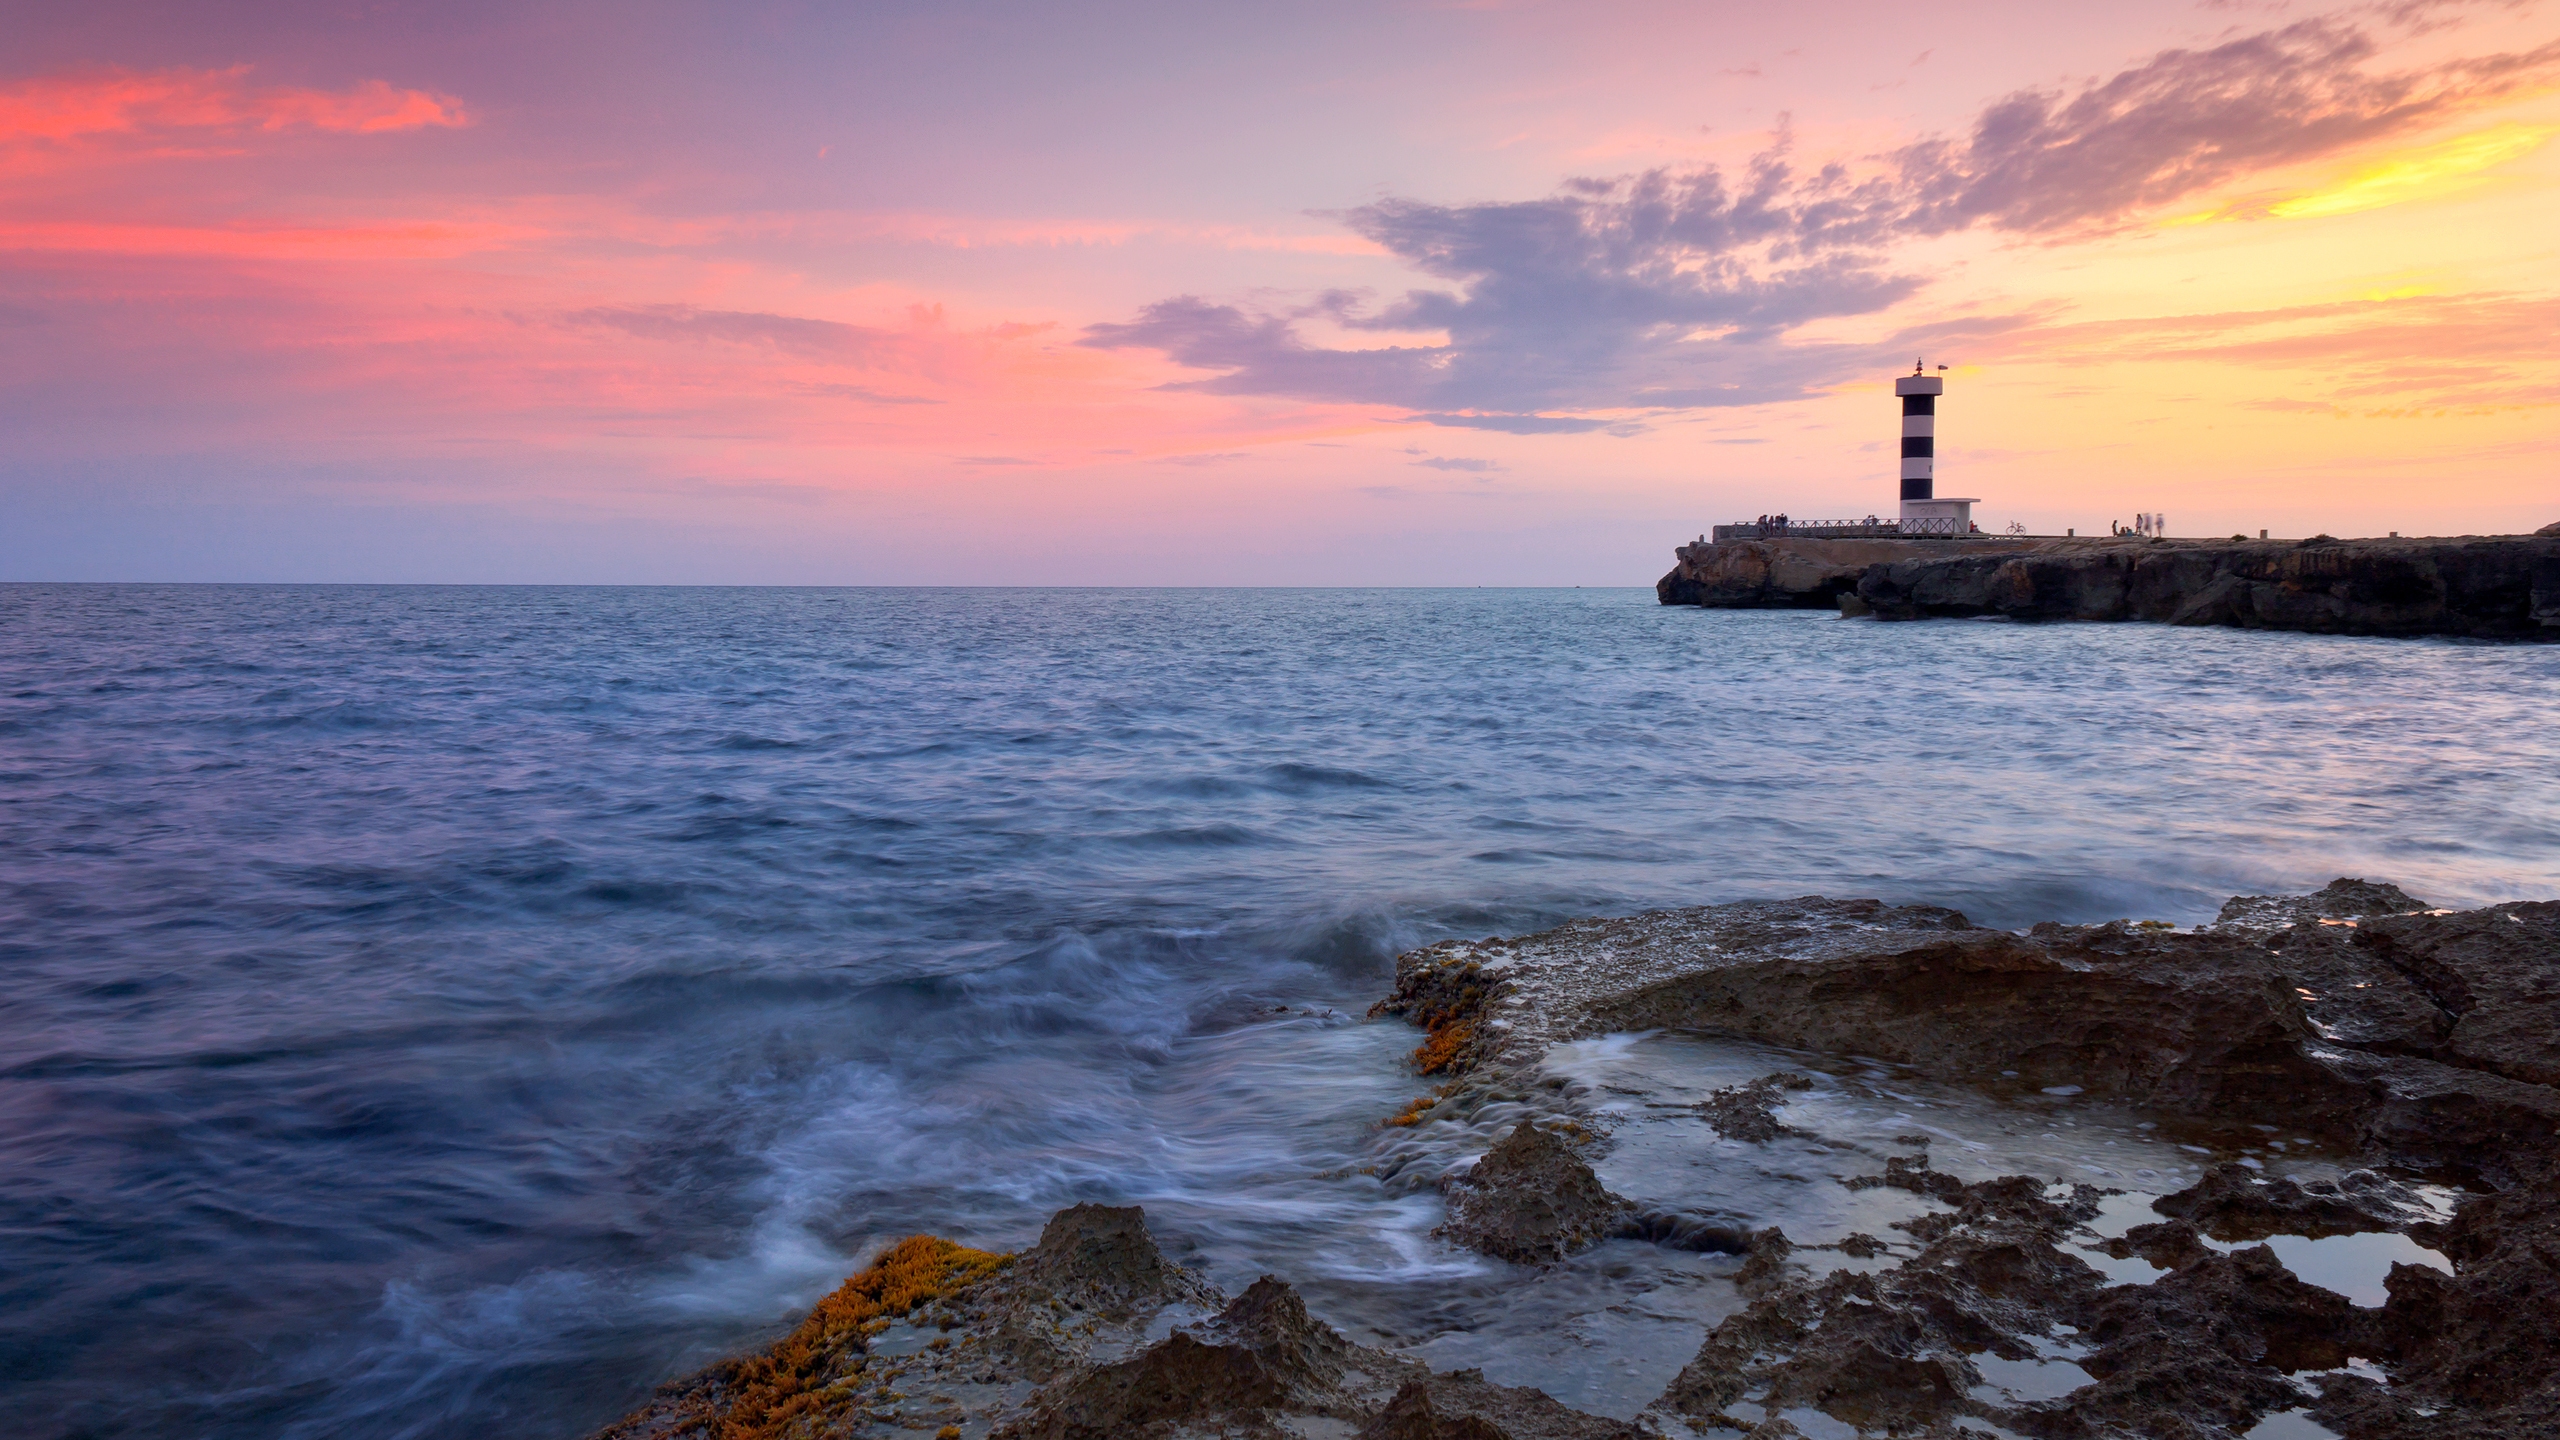 Sunset Lighthouse for 2560x1440 HDTV resolution